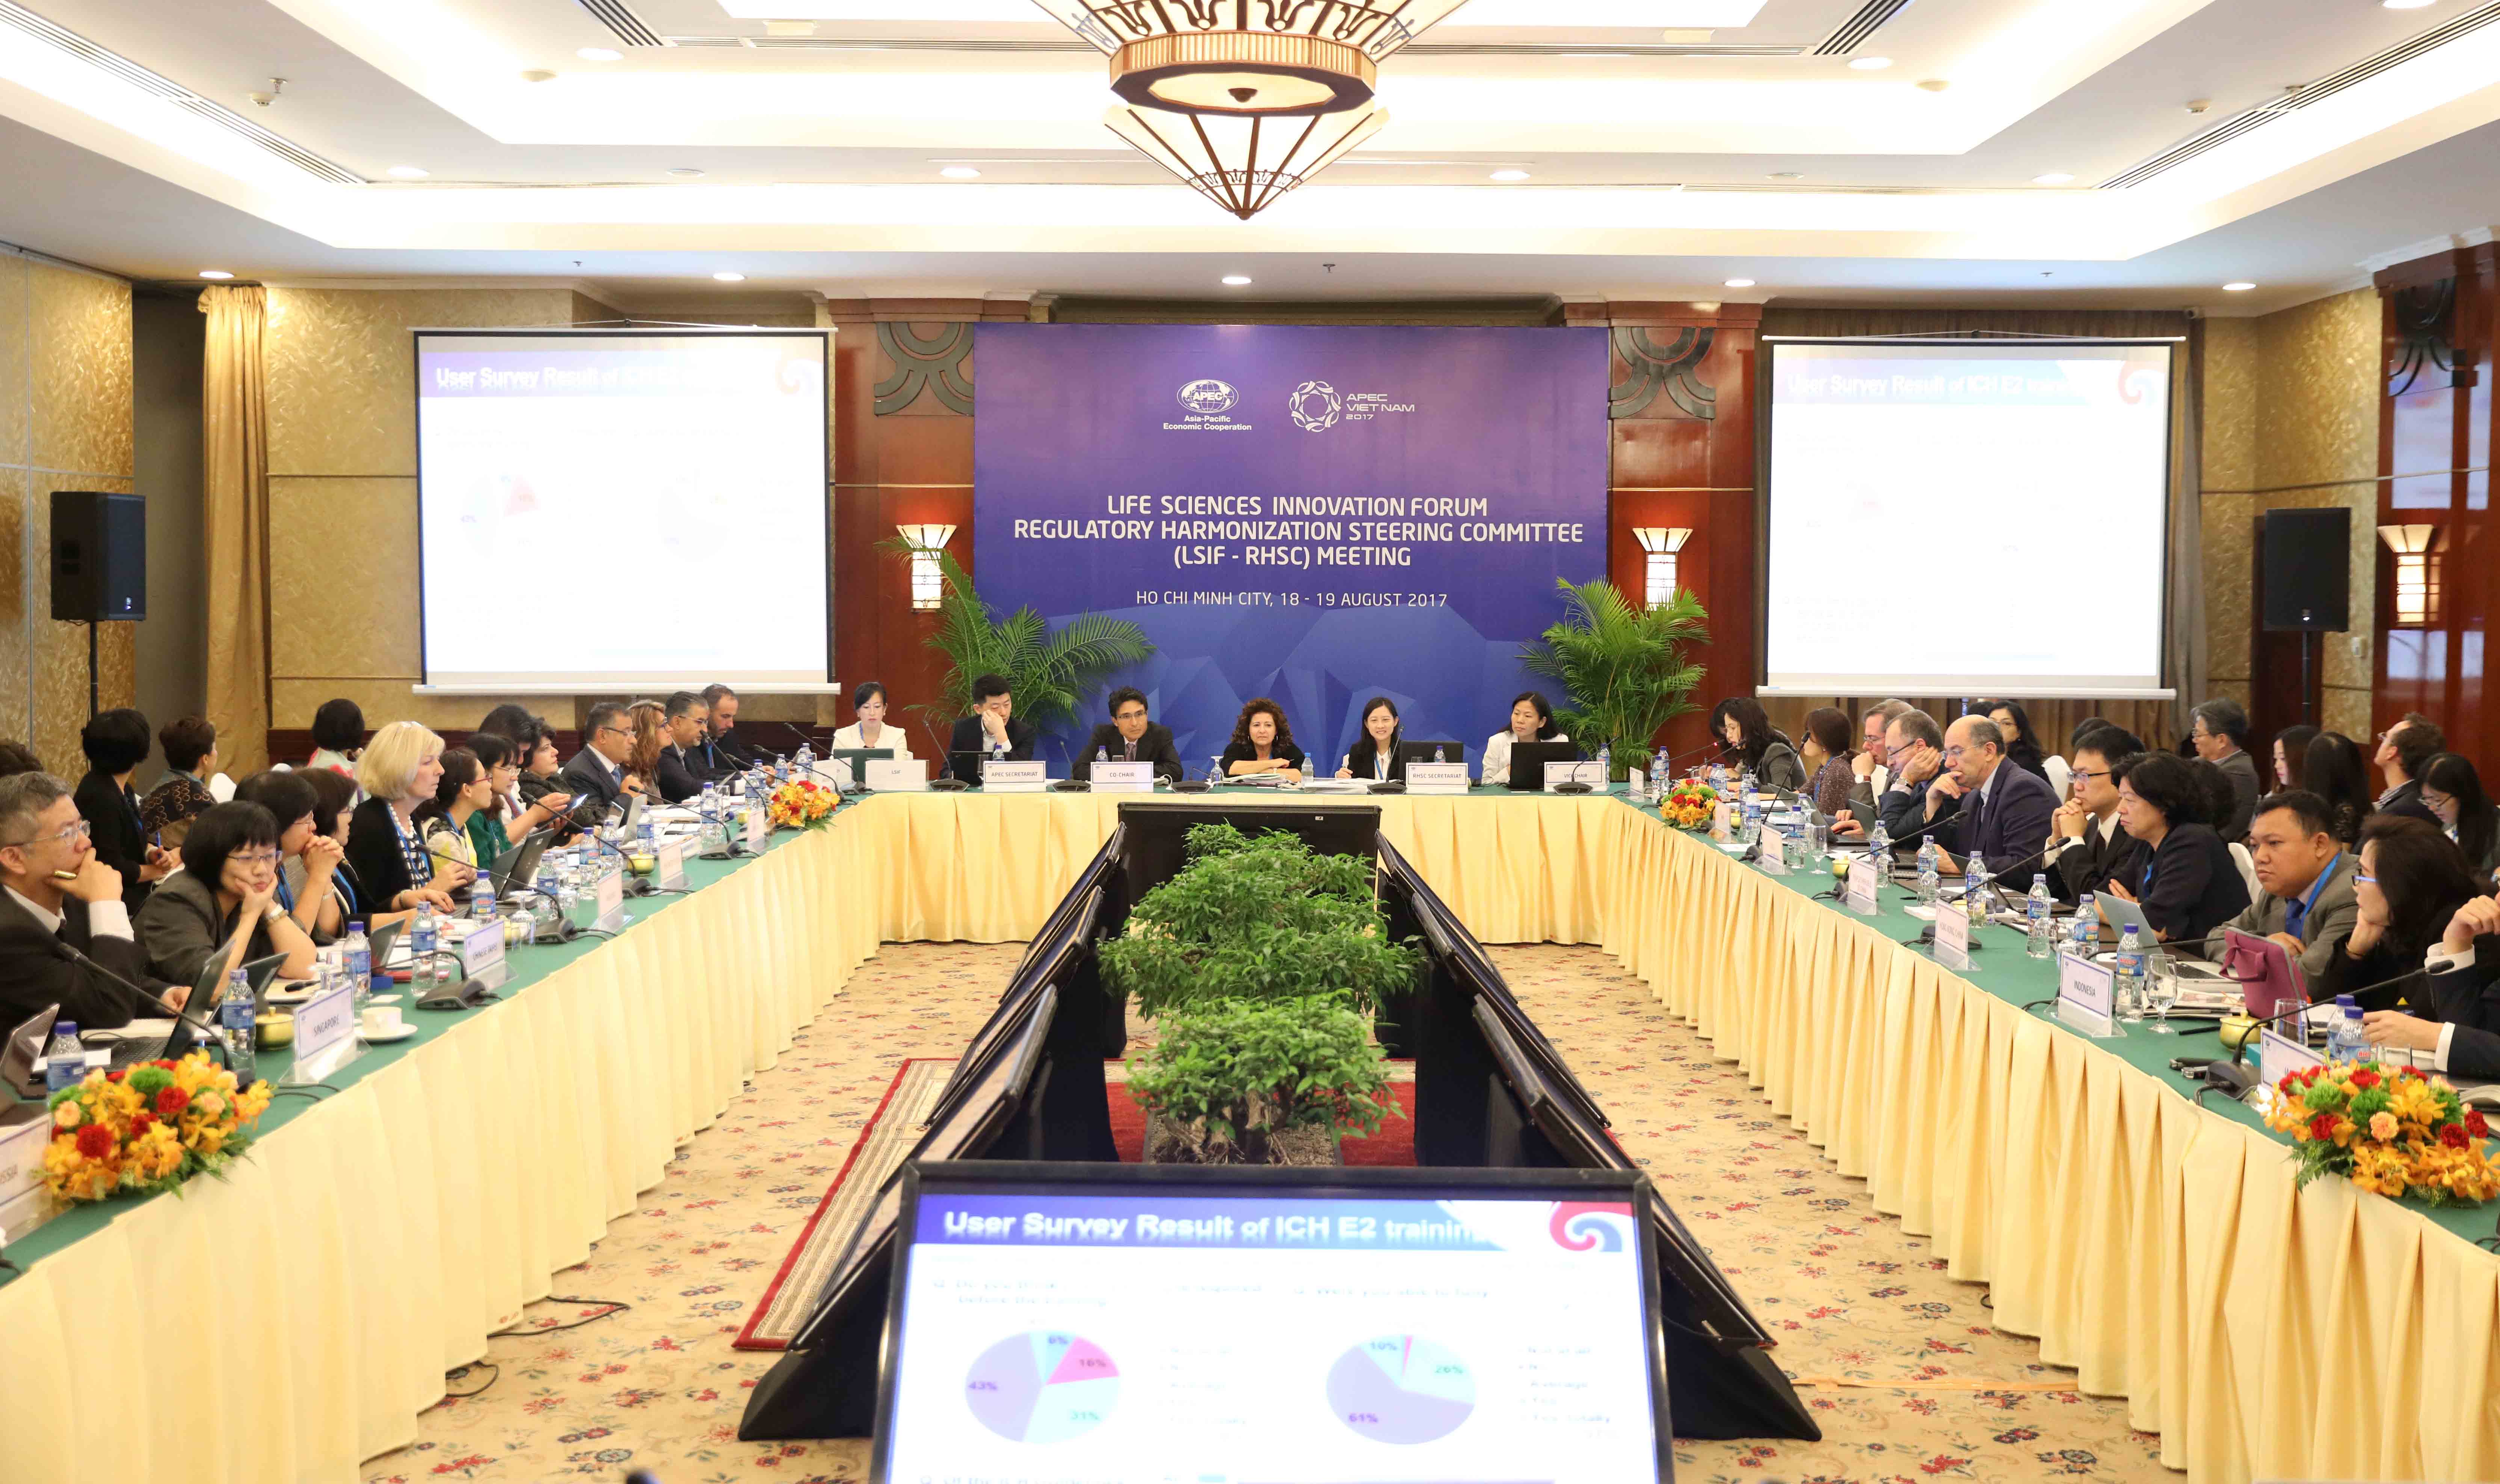  Quang cảnh cuộc họp của Chuỗi APEC 2017 tại Việt Nam